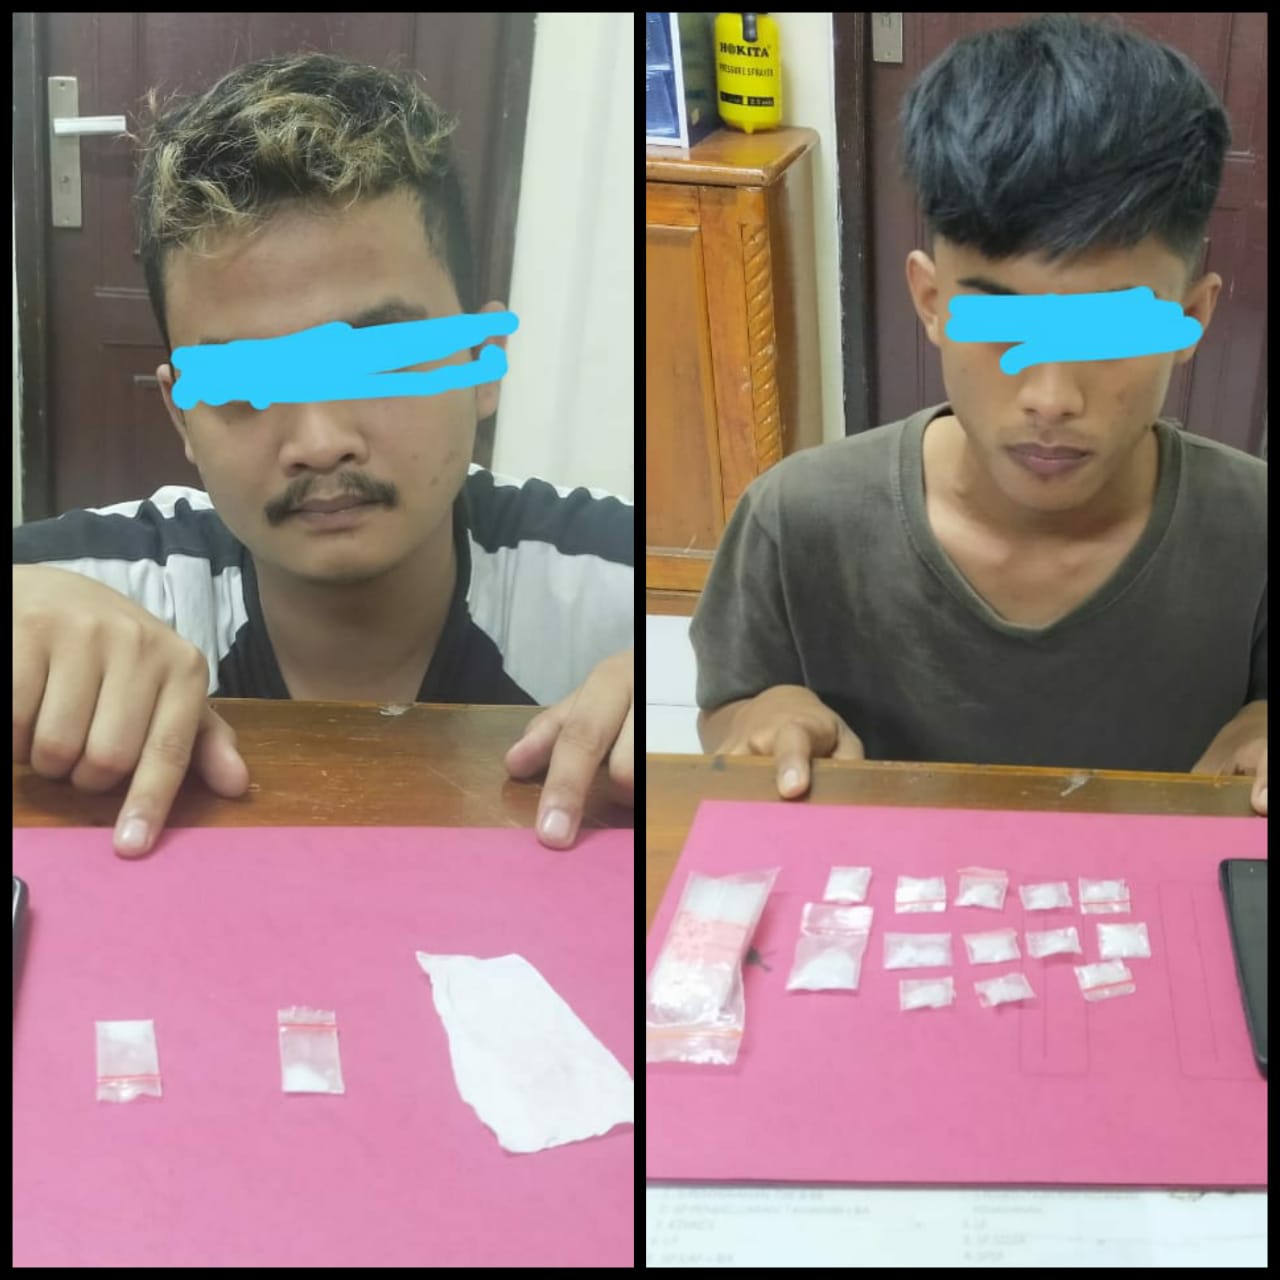 Polres Siak Kembali Amankan 2 Pria Penyalahgunaan Narkoba Jenis Shabu di Tualang